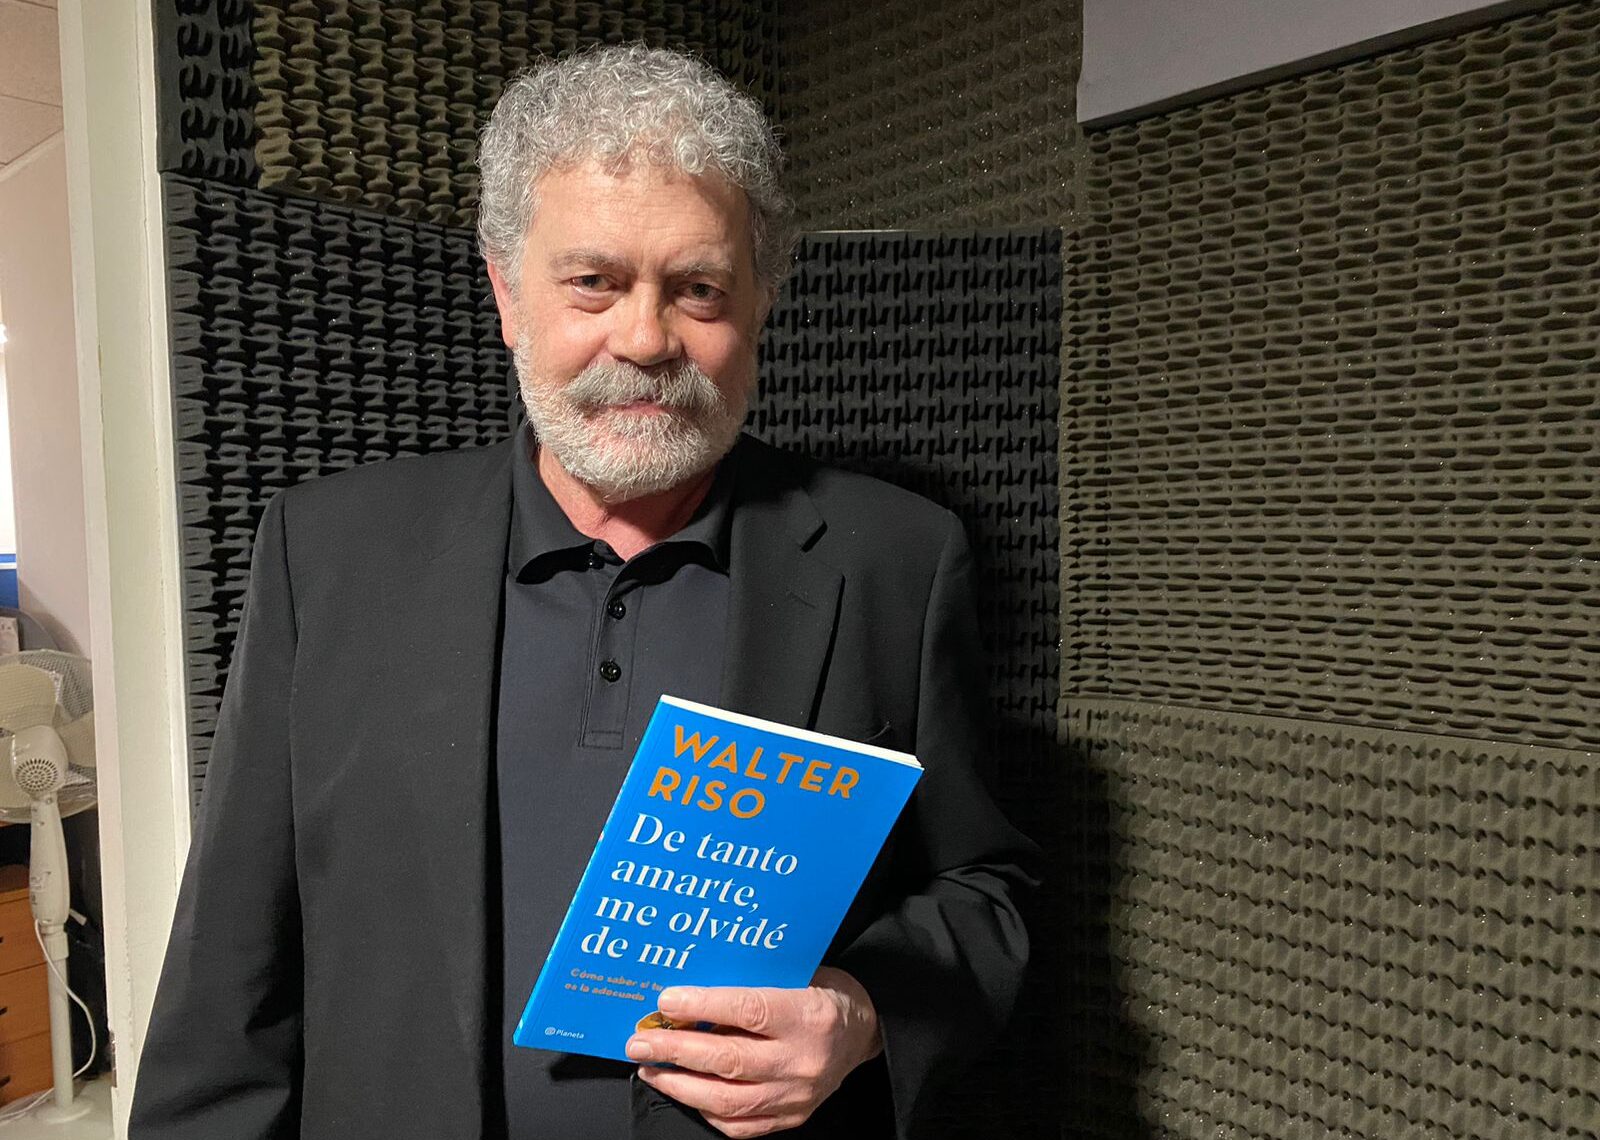 Walter Riso, sicólogo argentino visitó La hora del Taco con su nuevo libro “De tanto amarte me olvidé de mí”